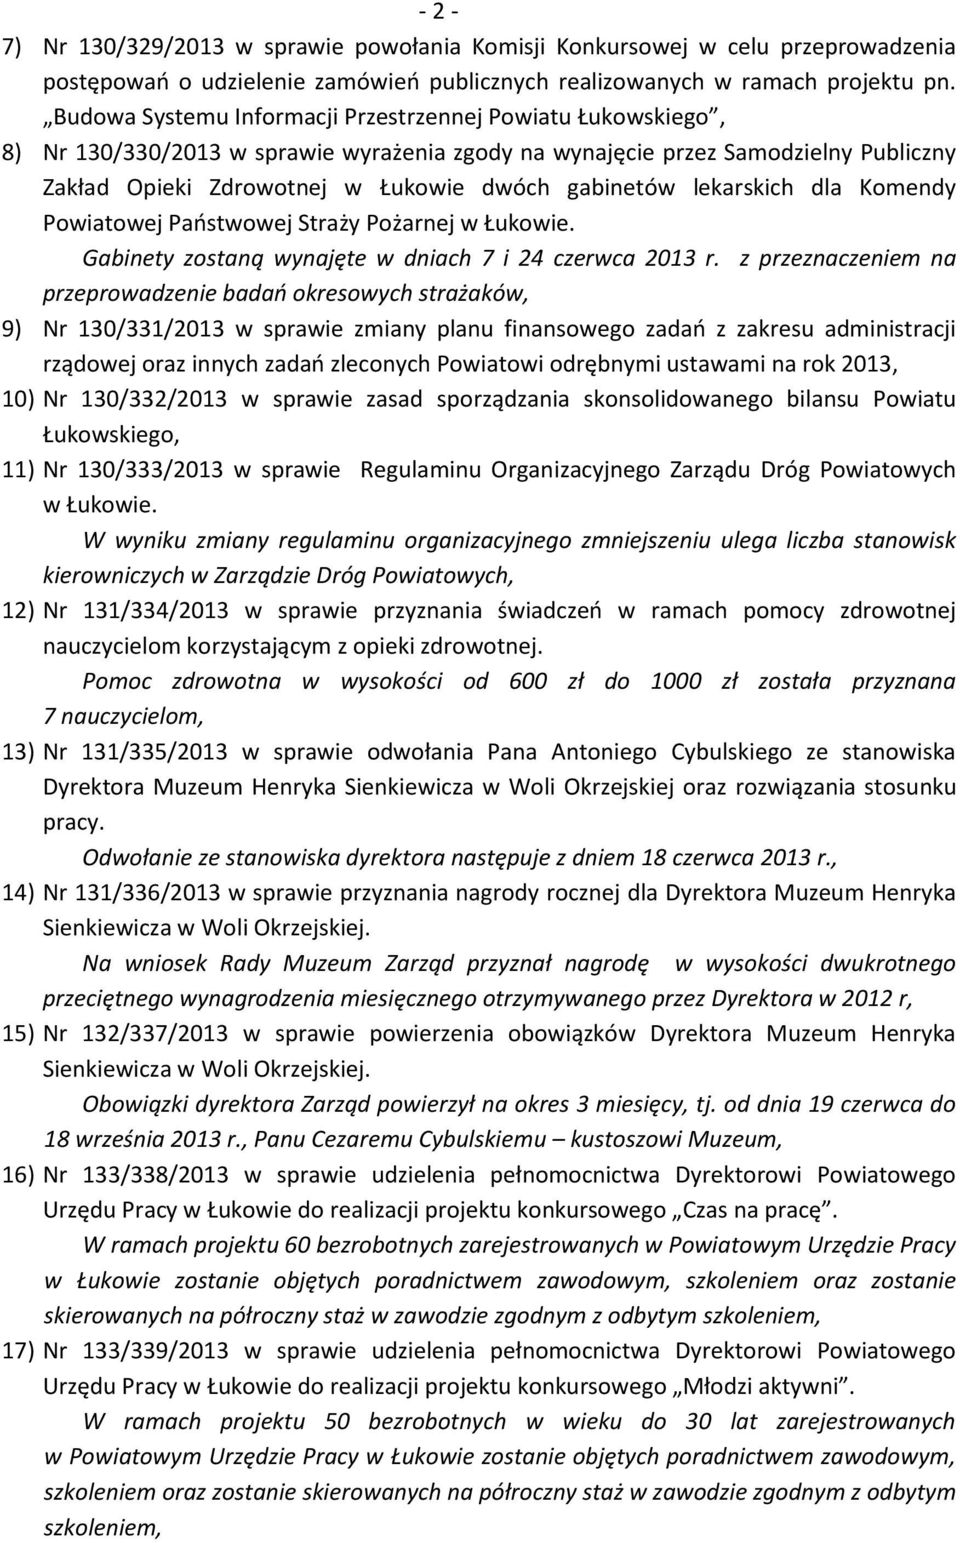 lekarskich dla Komendy Powiatowej Państwowej Straży Pożarnej w Łukowie. Gabinety zostaną wynajęte w dniach 7 i 24 czerwca 2013 r.